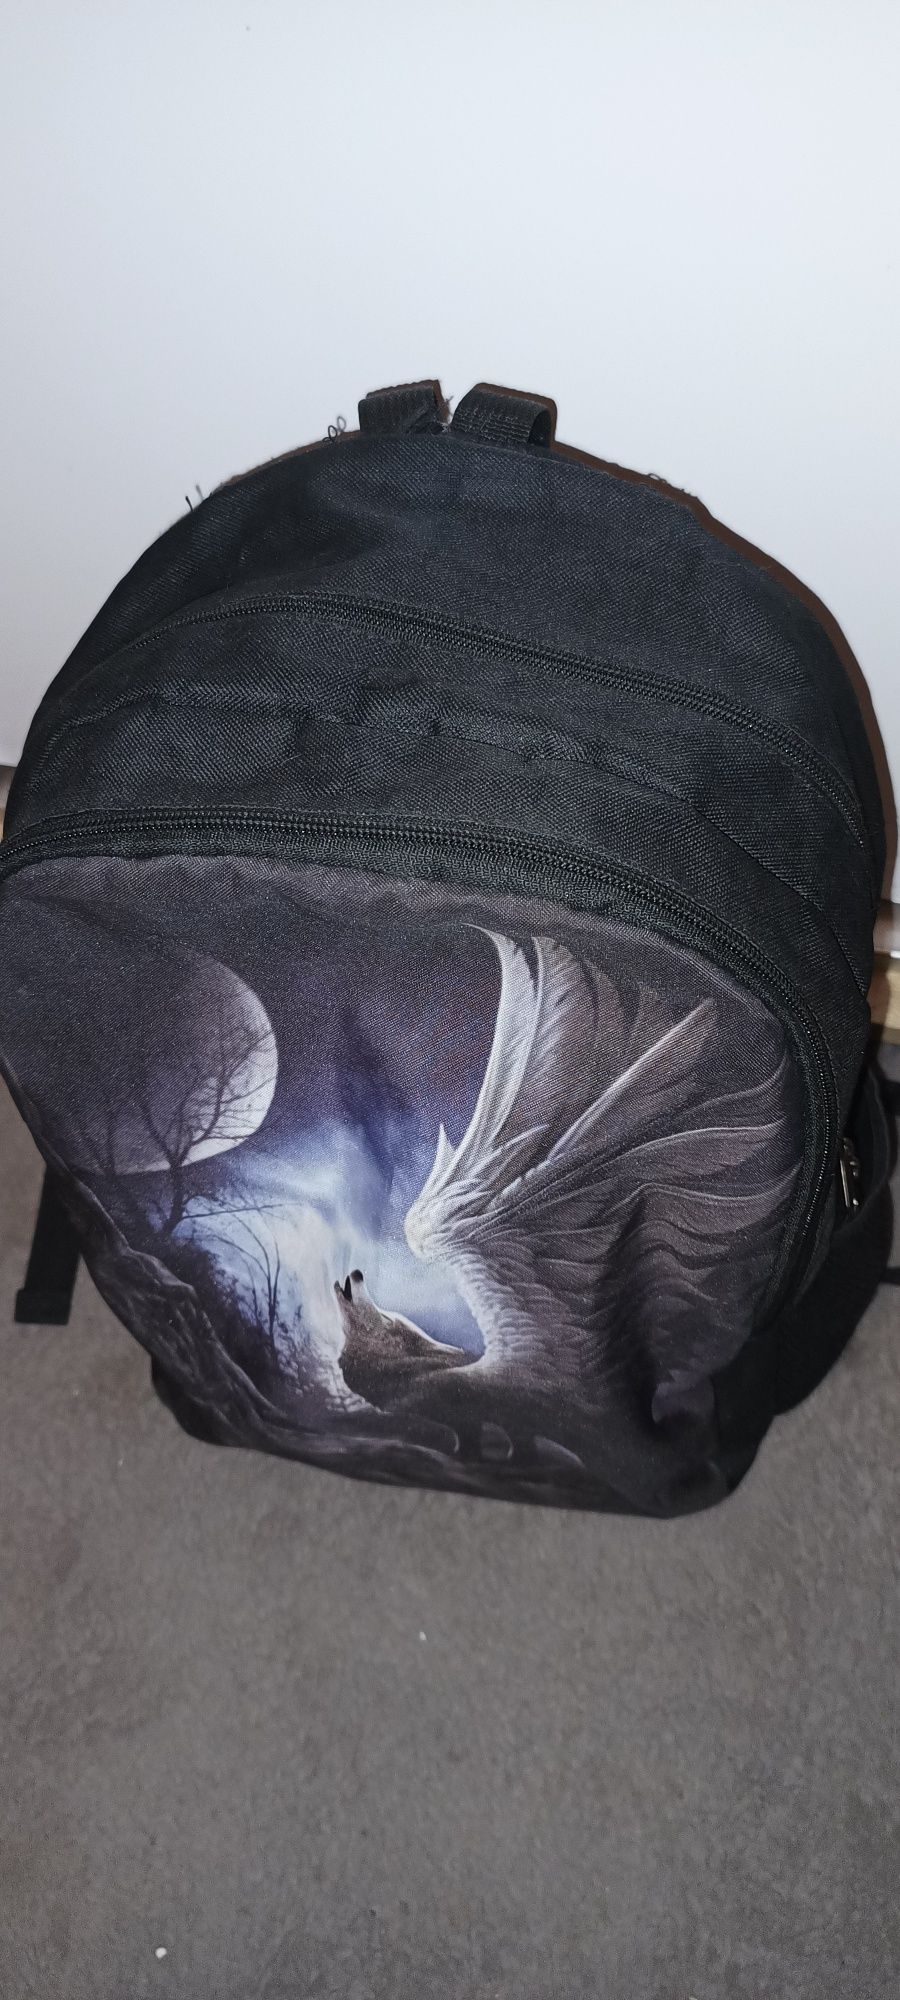 Plecak torba emo alternative wilk skrzydła skała metal nadruk czarny